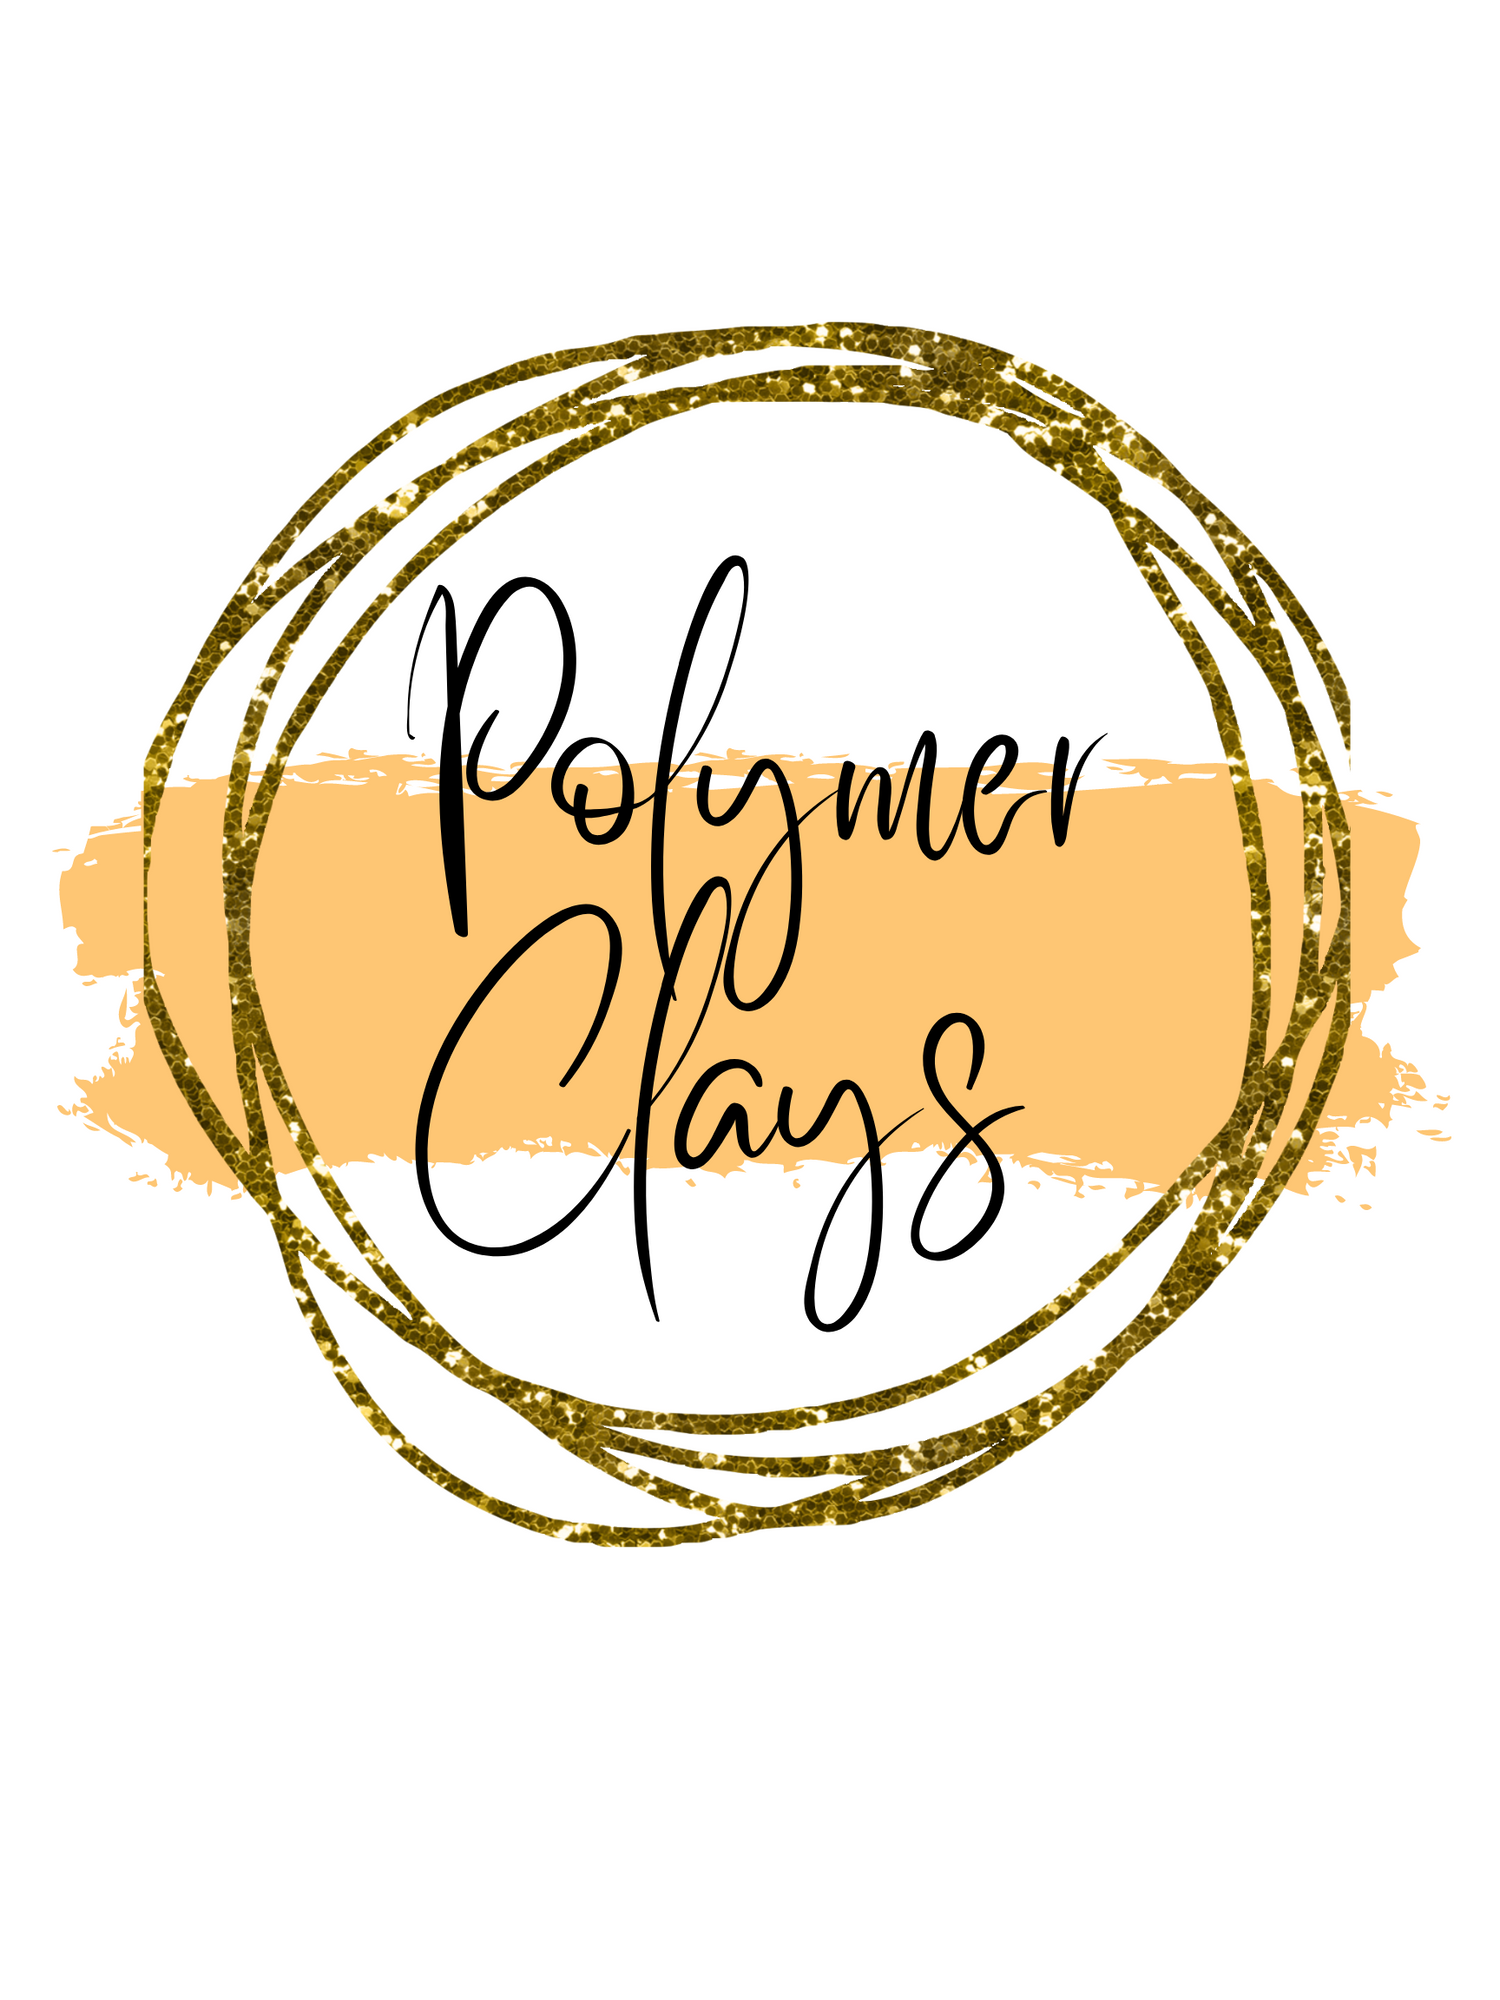 Polymer clays